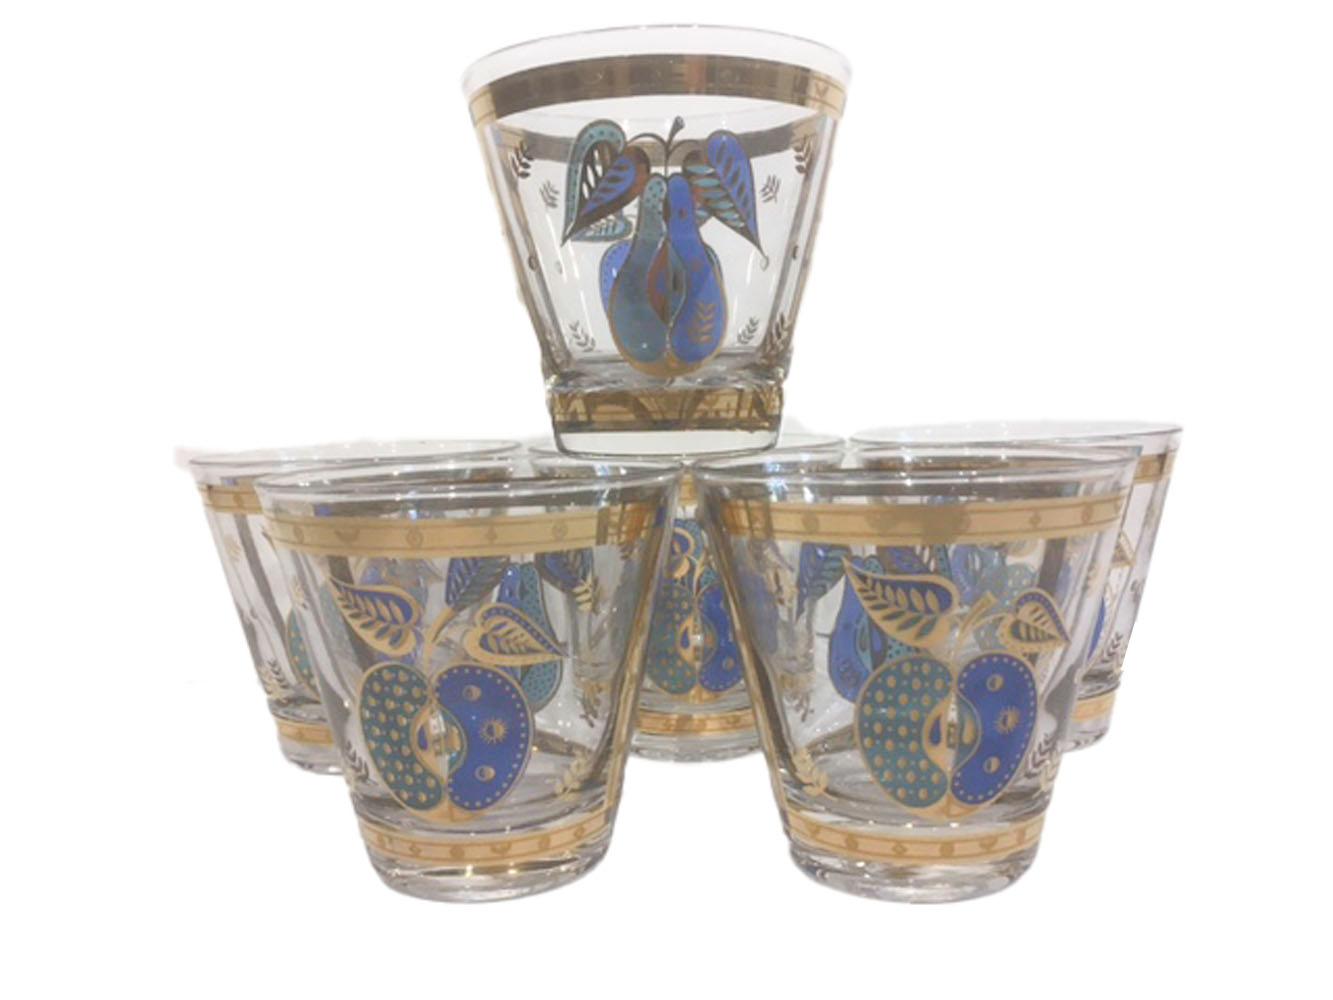 Ensemble de six verres à l'ancienne de style Mid-Century Modern par Georges Briard dans le modèle Forbidden Fruit. Chacun d'entre eux est en verre transparent décoré d'émail translucide bleu et vert et d'or 22 carats. Chaque verre présente une poire